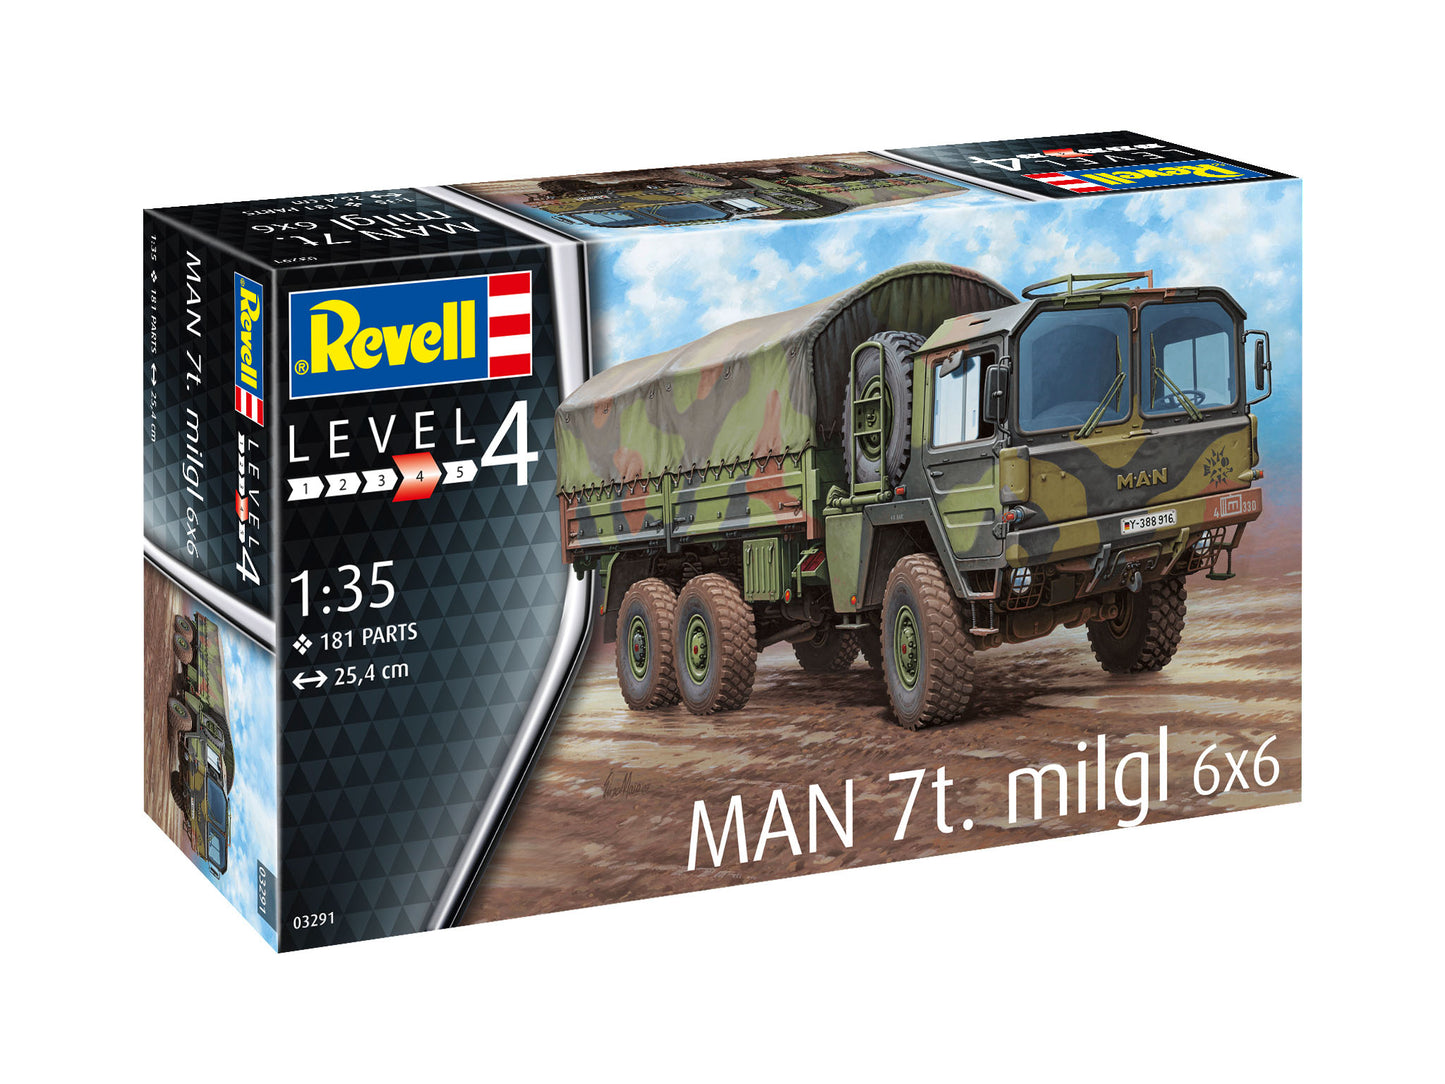 Revell of Germany 03291 1:35 MAN 7t Milgl Military Vehicle Model Kit